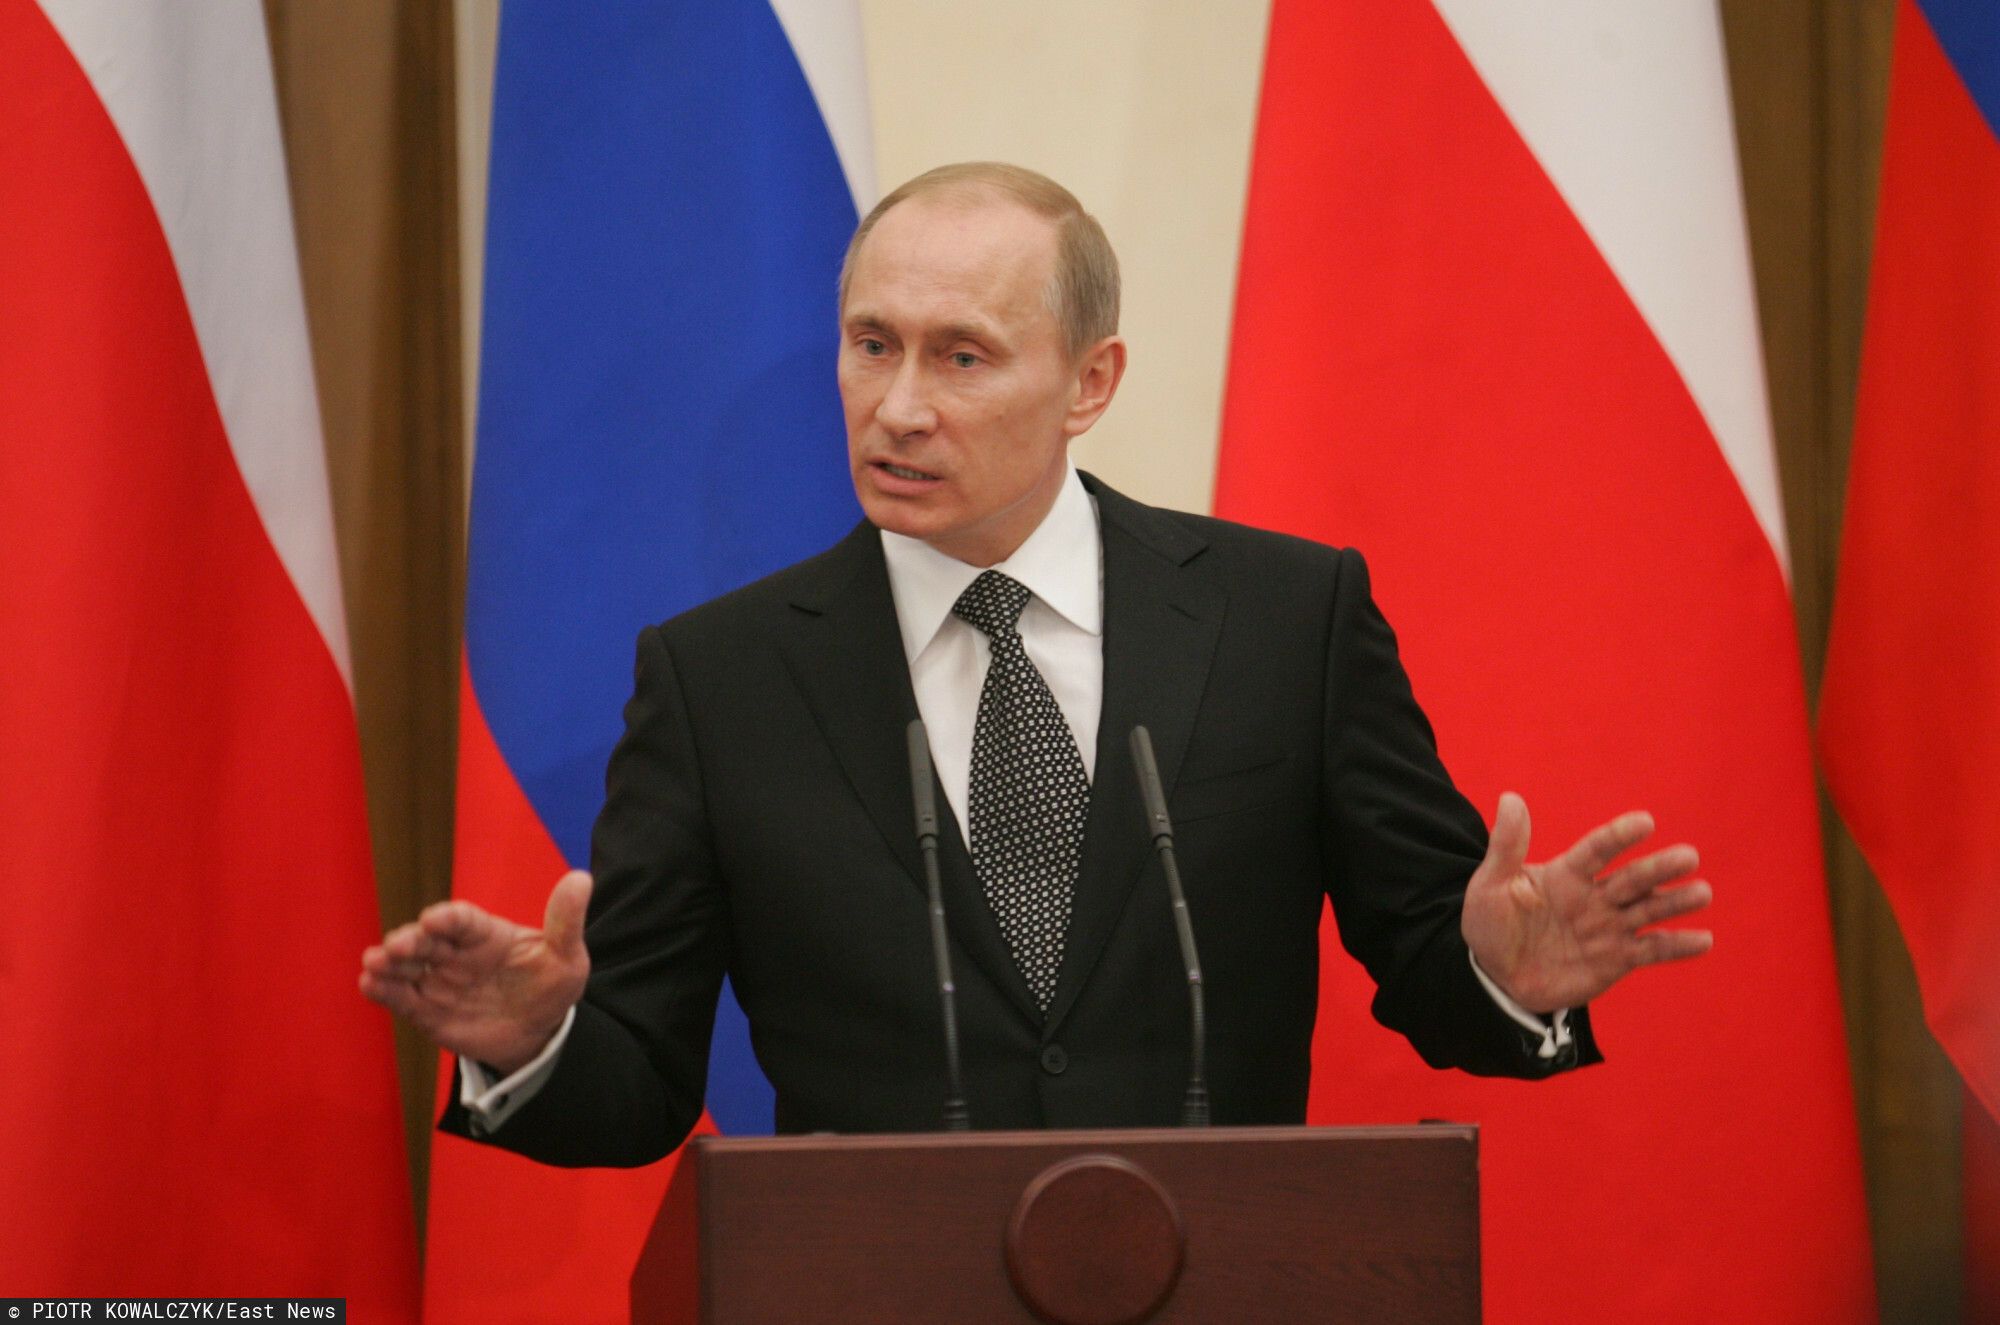 Władimir Putin dwukrotnie był nominowany do Pokojowego Nobla. Zawsze w kontrowersyjnym momencie